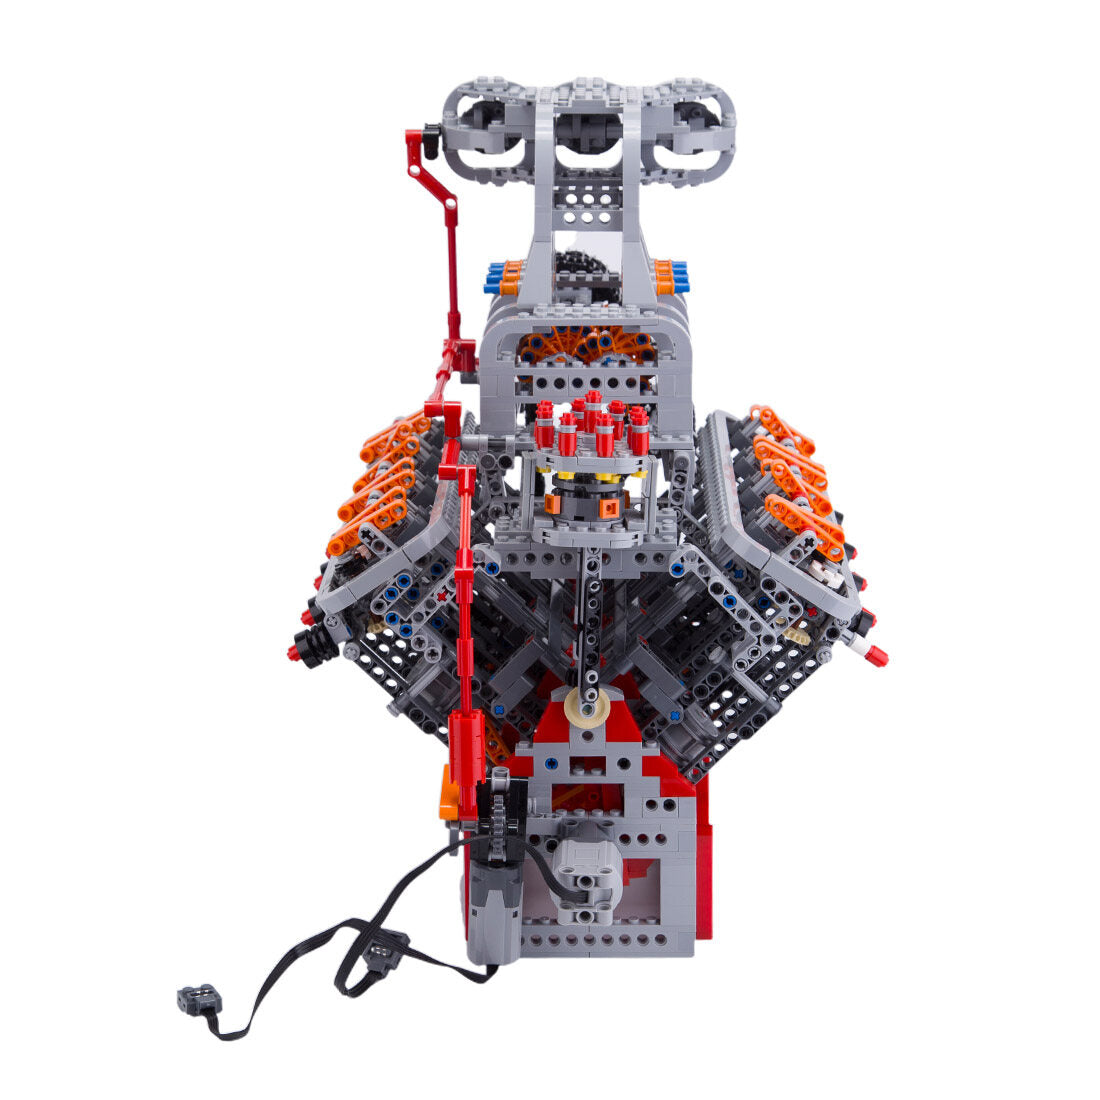 HOLDEN OHV 5.0L V8 Motor MOC Engine Model Building Blocks Toy Set - 2106PCS - Build Your Own V8 Engine